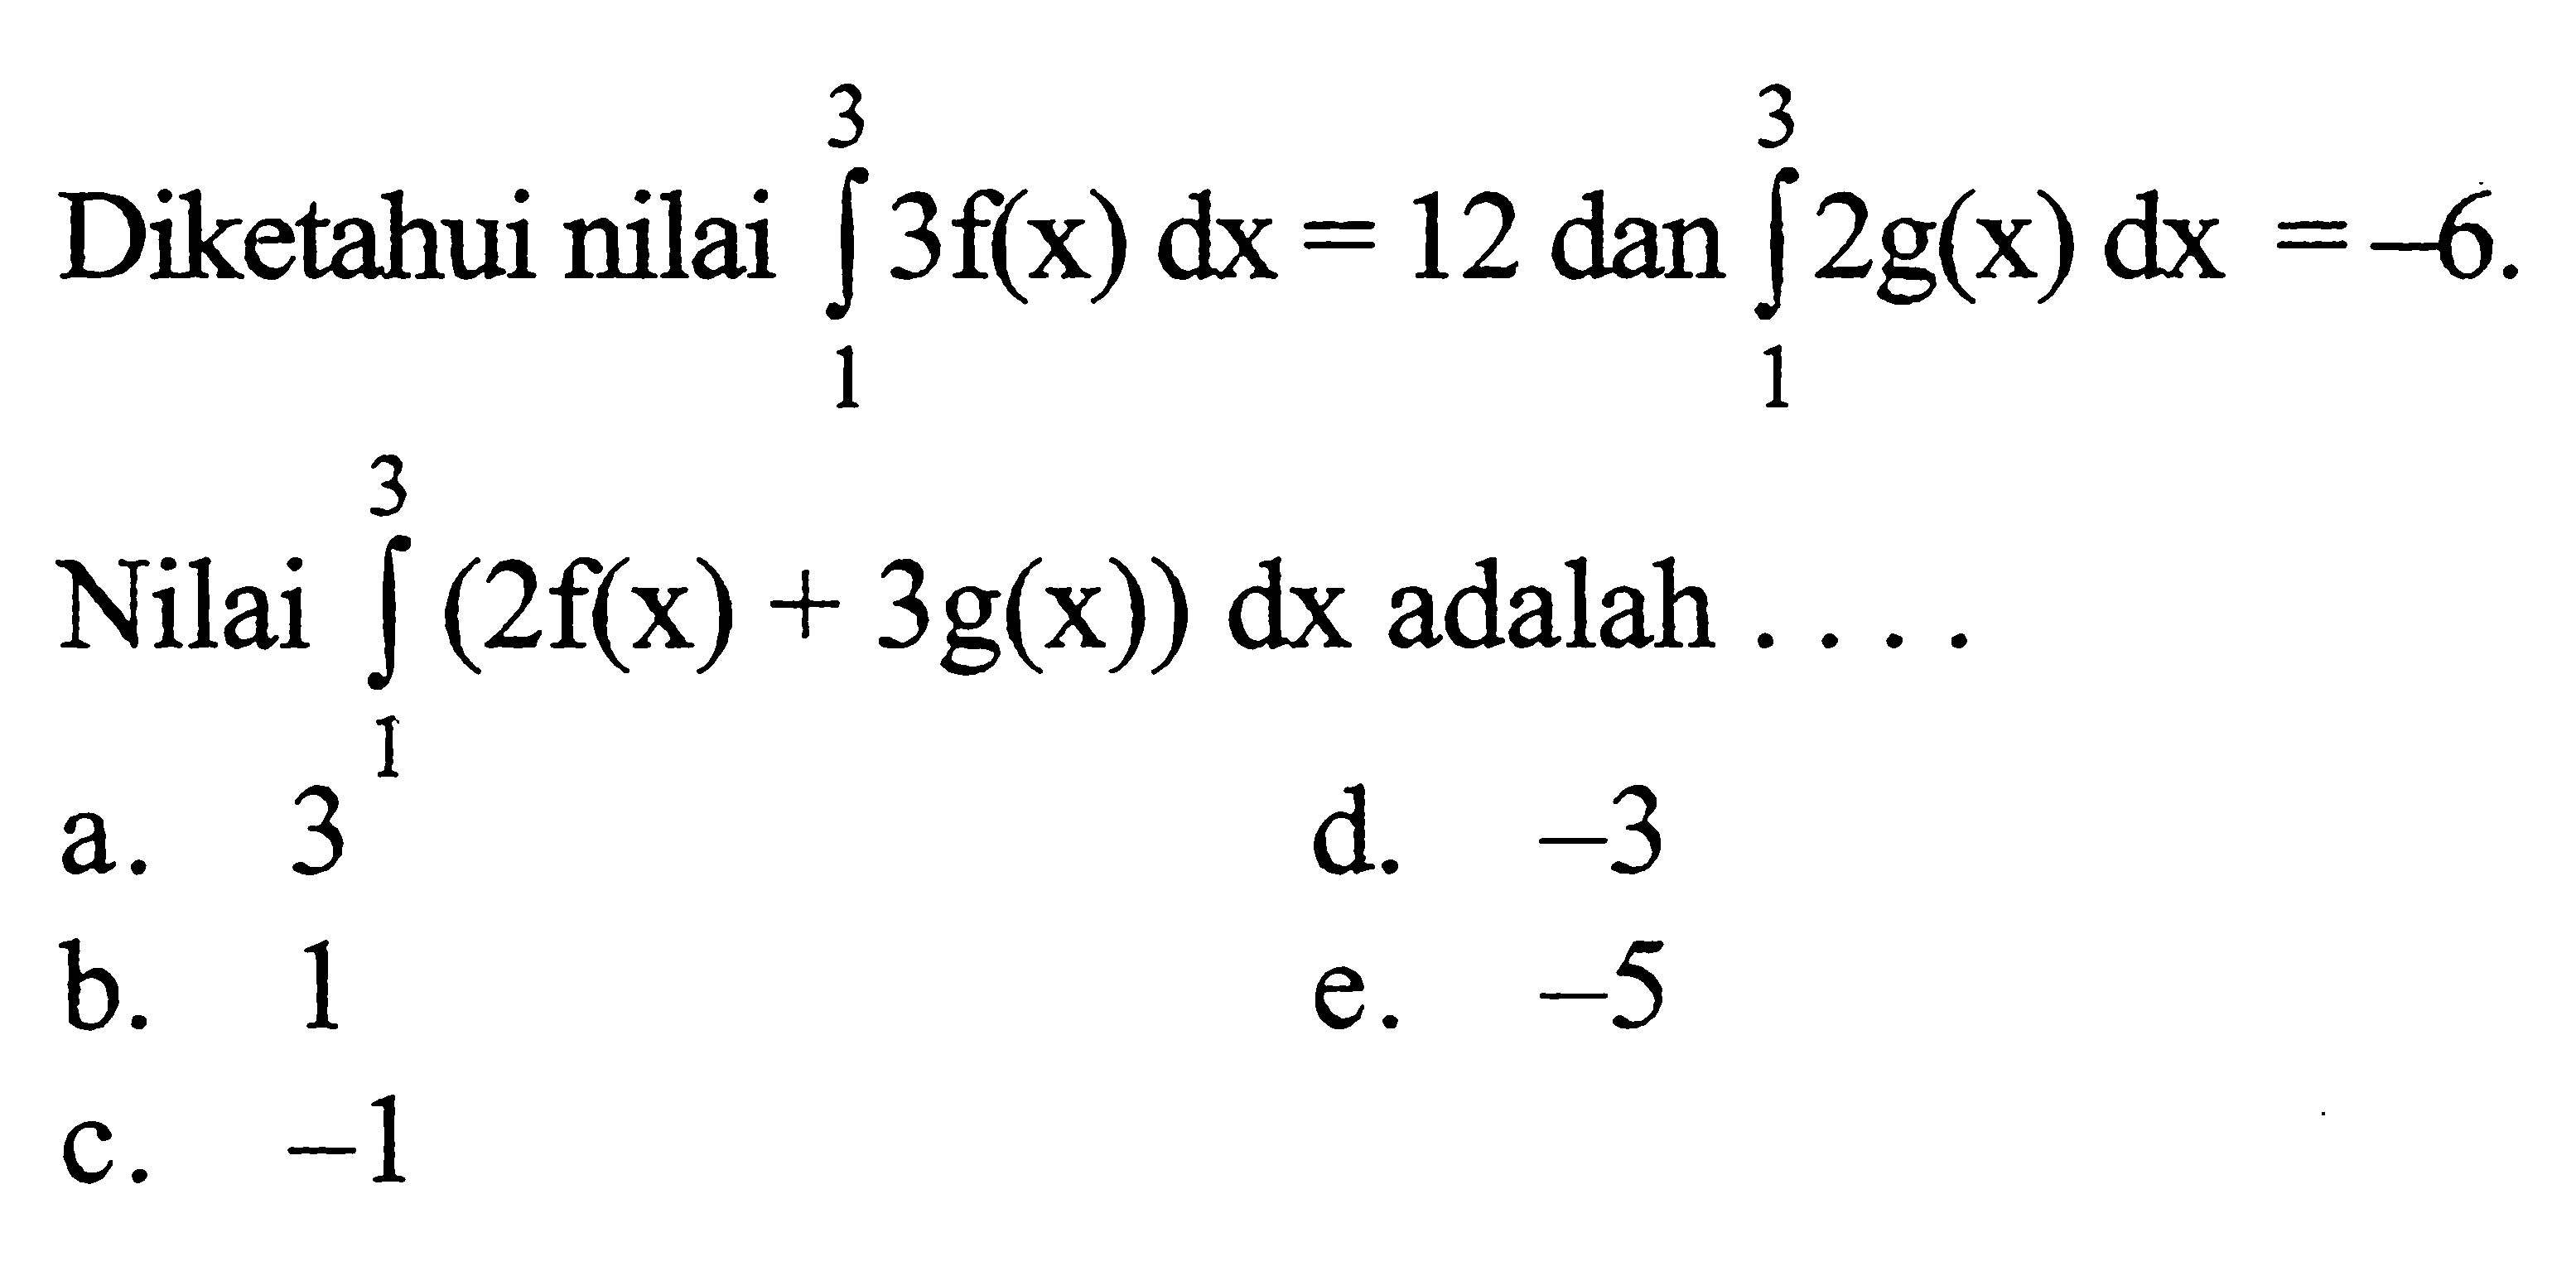 Diketahui nilai integral 1 3 3f(x) dx=12 dan integral 1 3 2g(x) dx=-6. Nilai integral 1 3(2f(x)+3g(x)) dx adalah ...